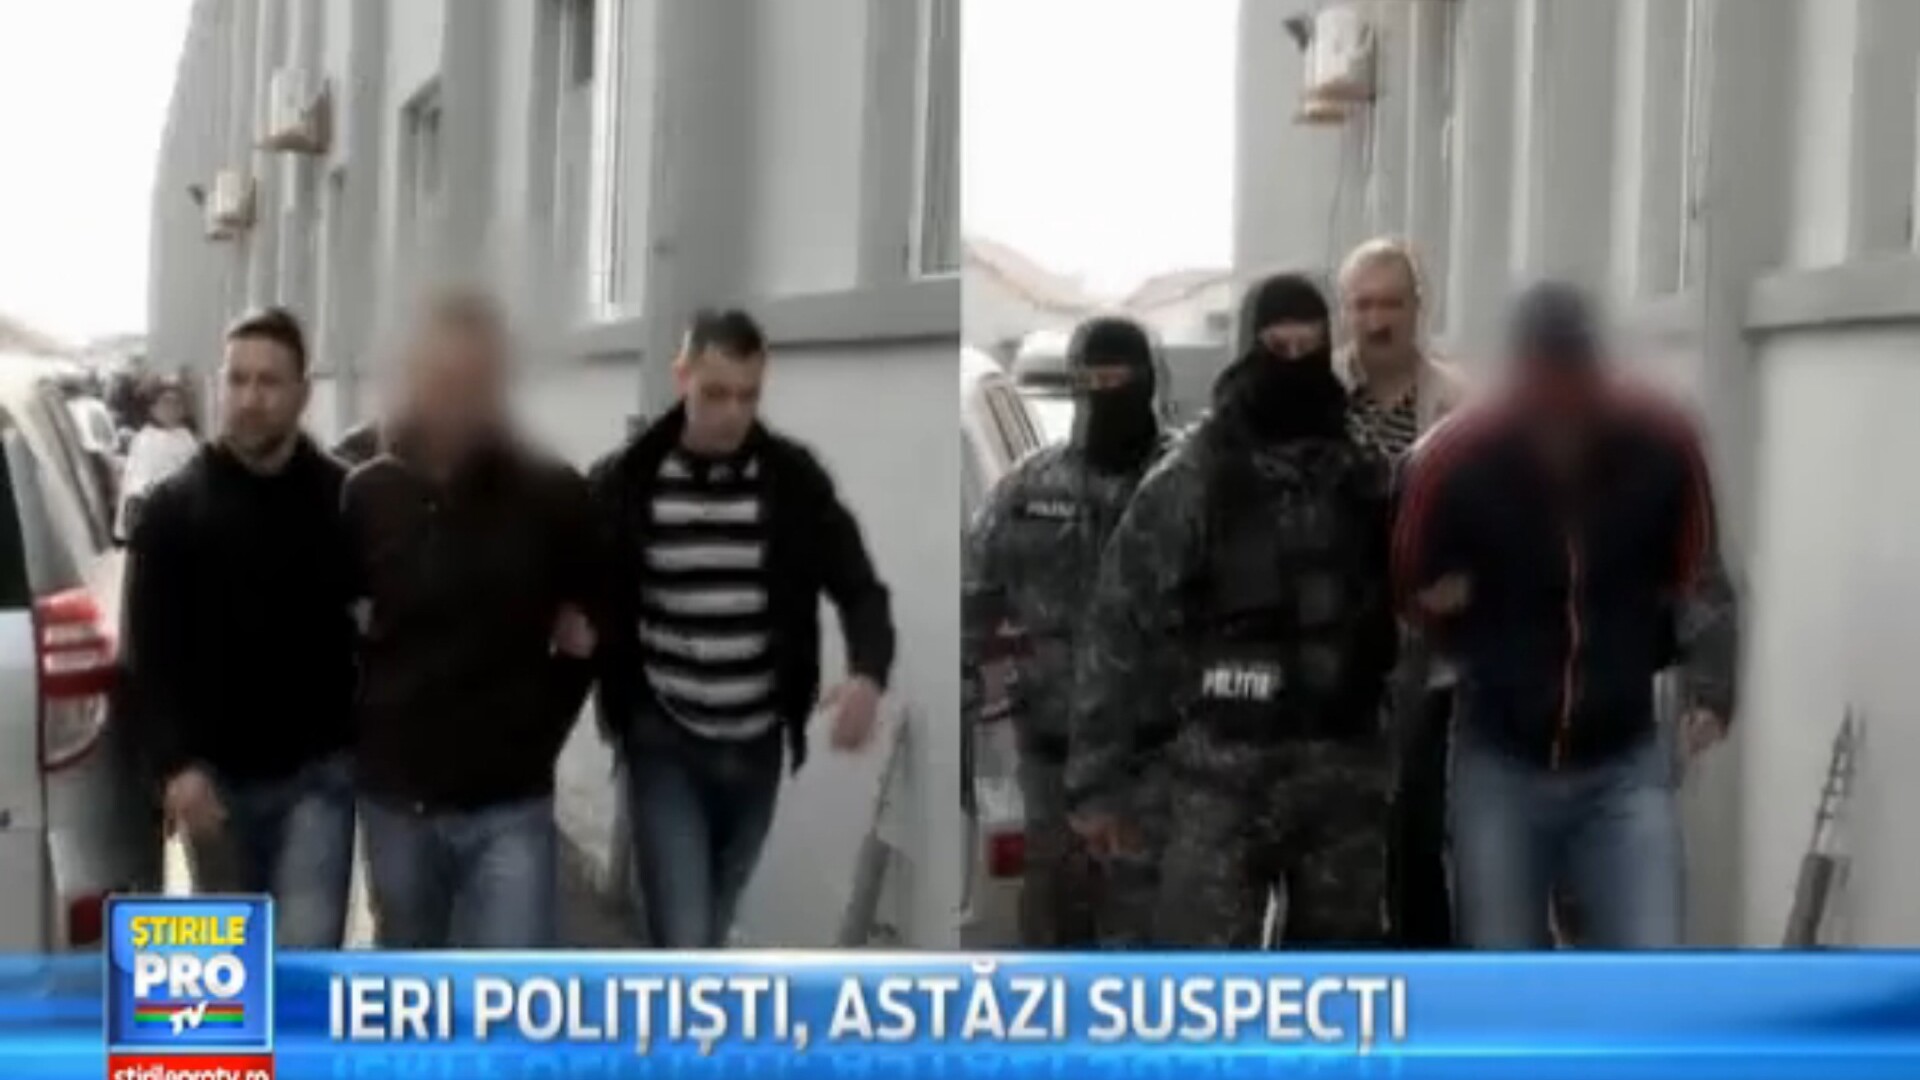 Politistii din Sibiu acuzati de furt calificat, au fost arestati preventiv pentru 30 de zile